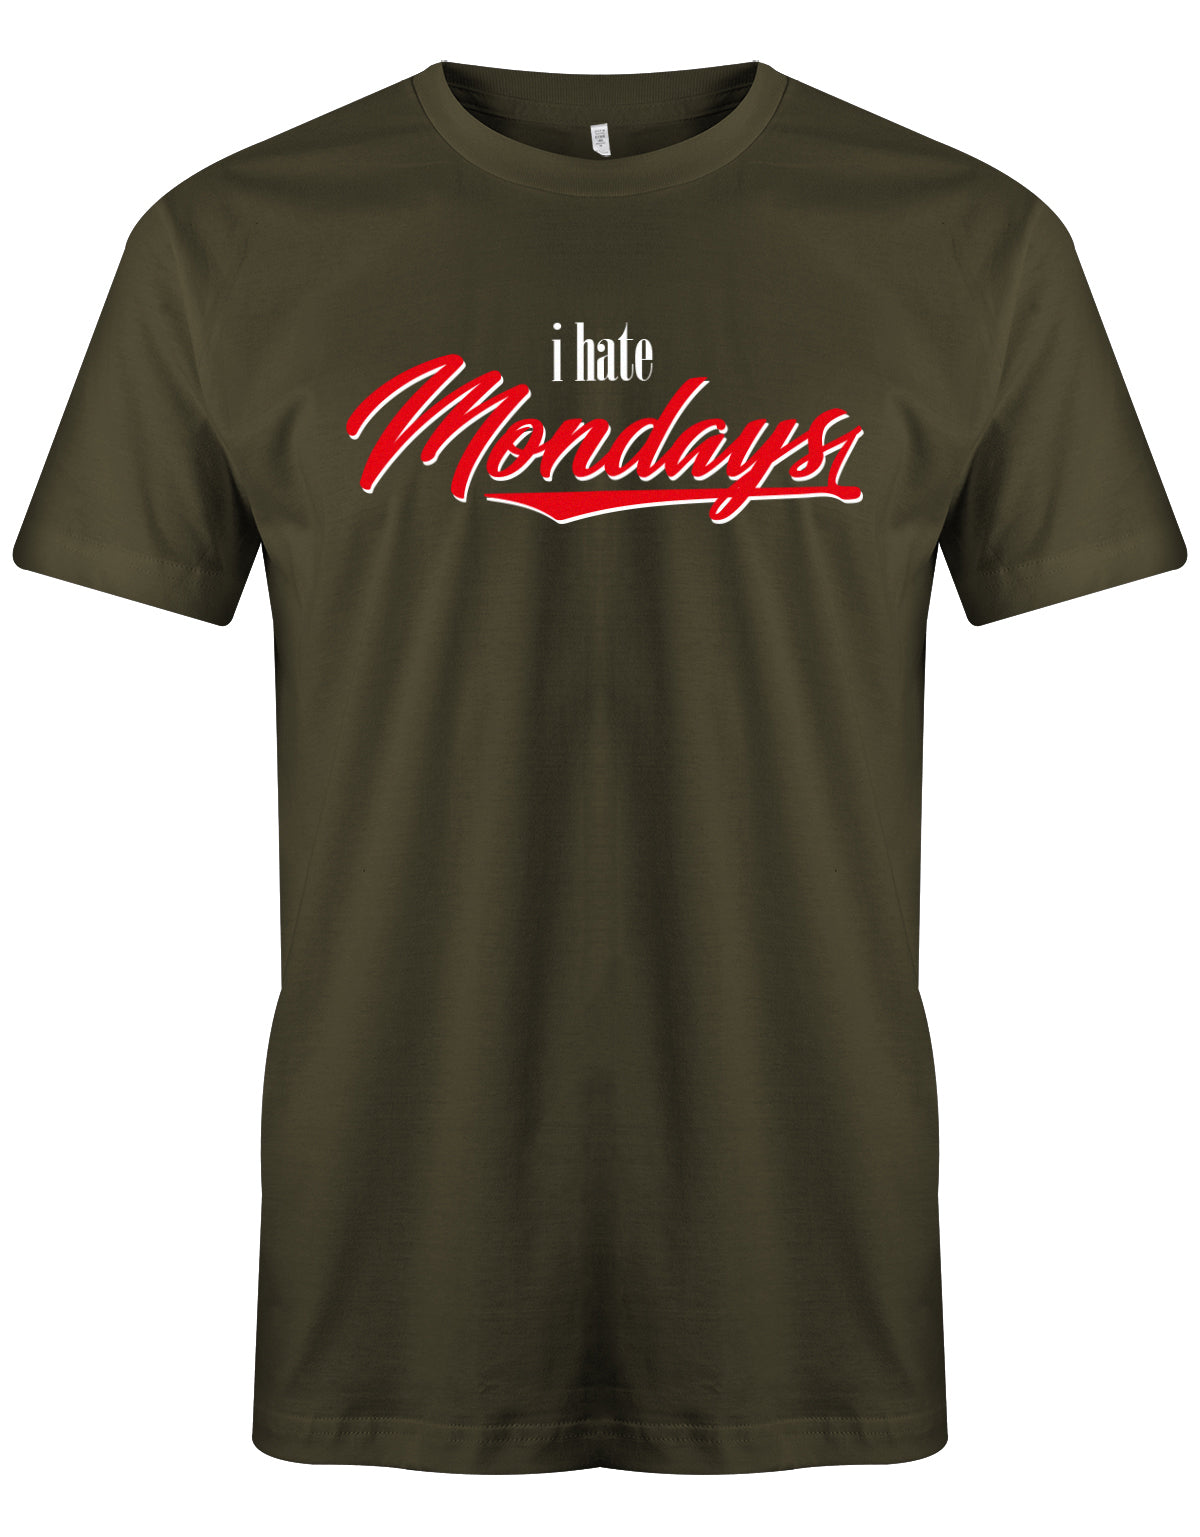 I hate Mondays -Ich Hasse Montage - Lustige Sprüche Männer Shirt myShirtStore Army